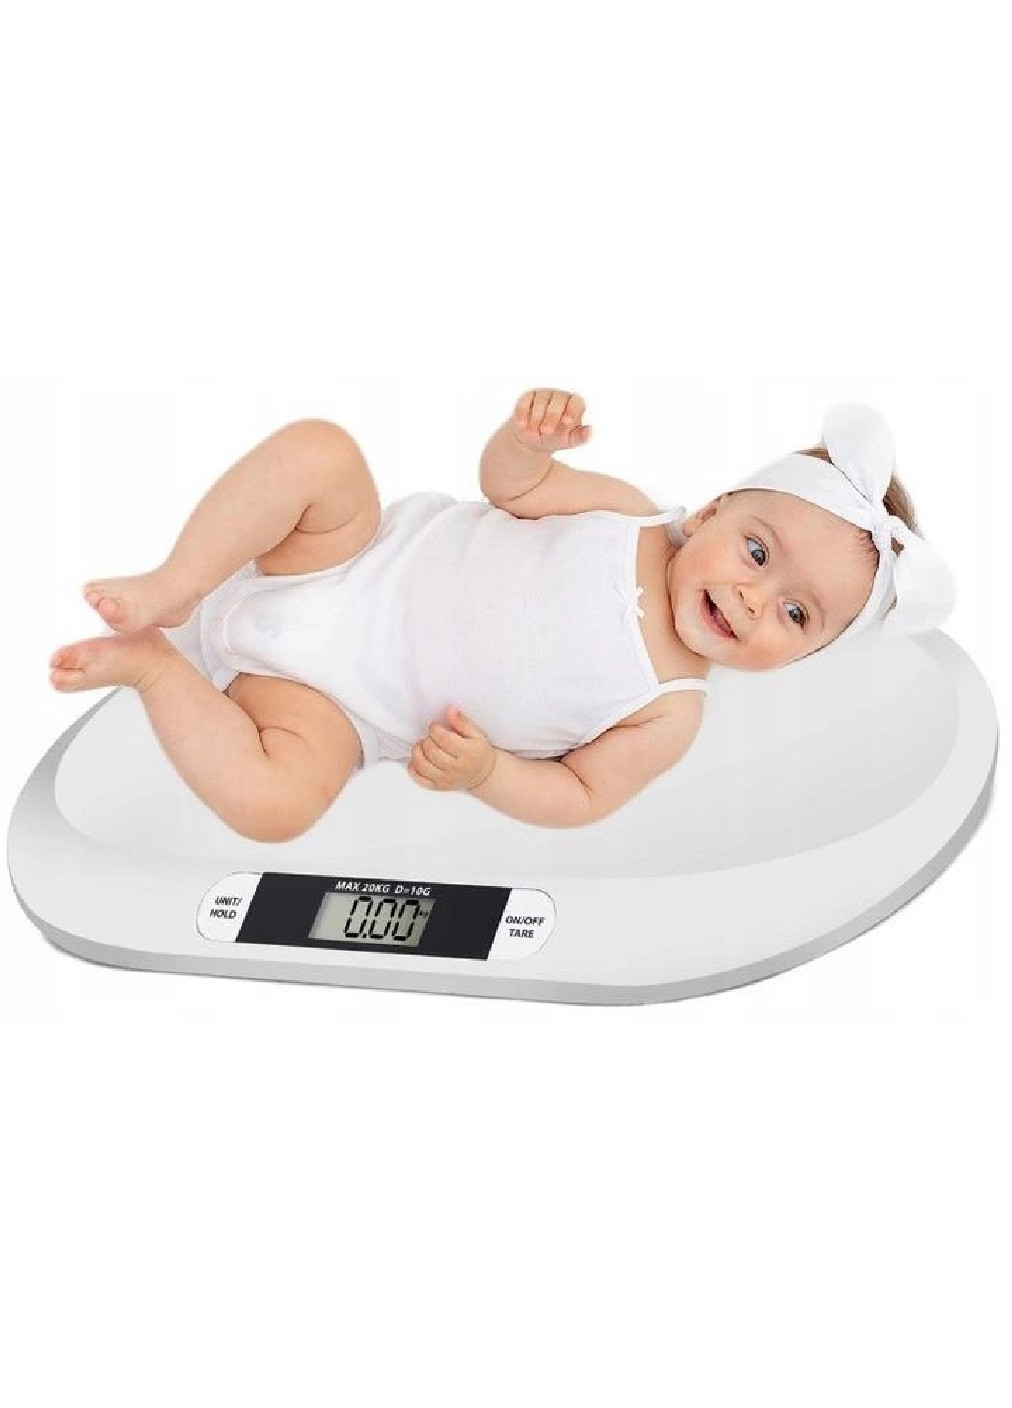 Електронні дитячі ваги для немовлят малюків з дисплеєм на батарейках 55,5×32,3×3,0 см (475148-Prob) Unbranded (262371405)